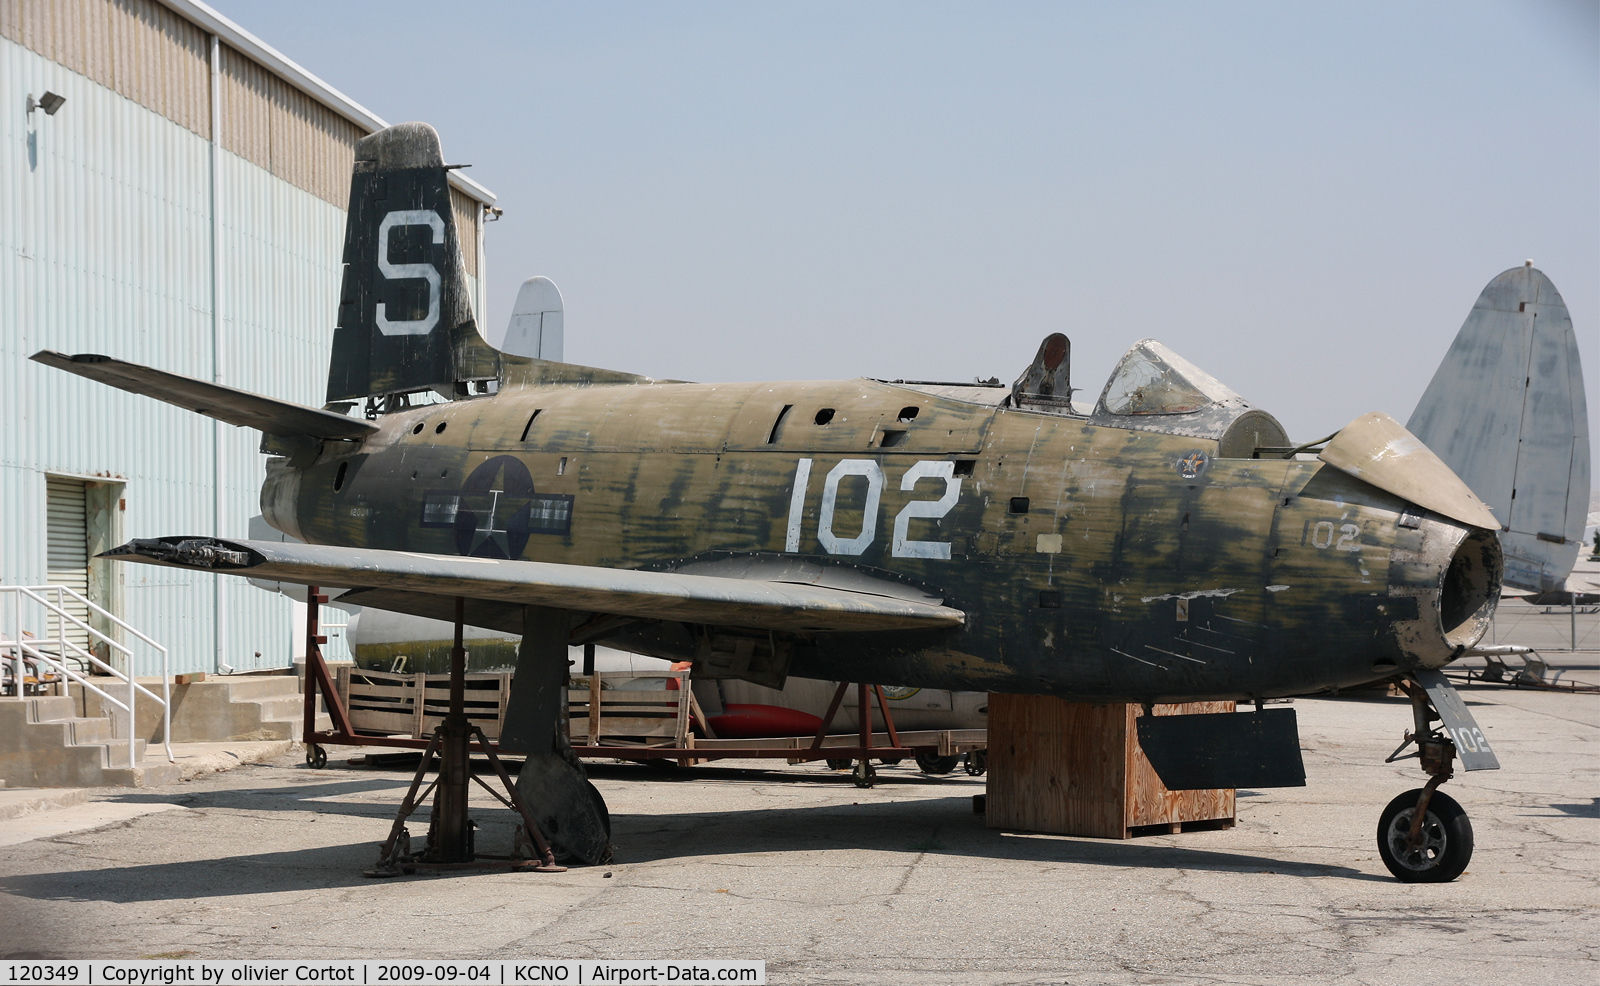 120349, North American FJ-1 Fury C/N 141-38401, Yanks museum reserve